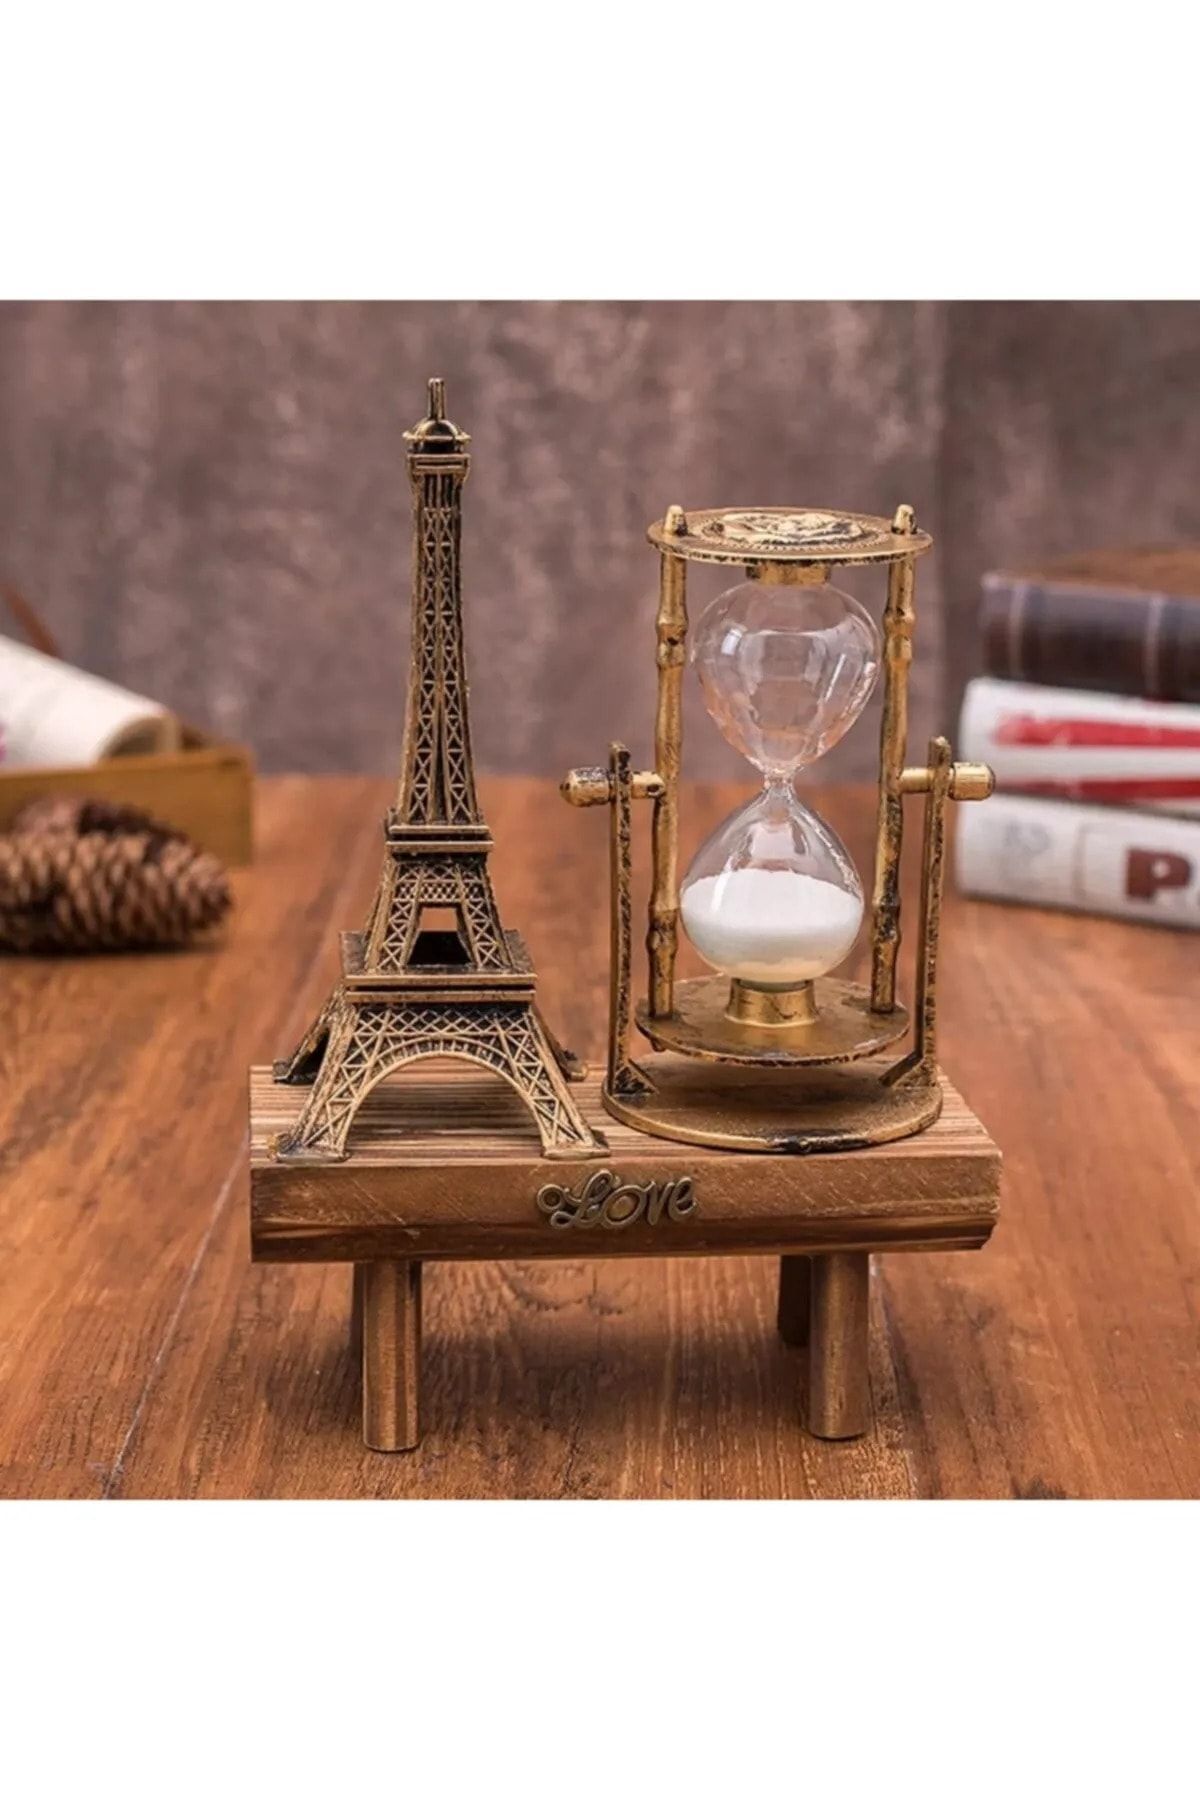 Genel Markalar Eyfel Kulesi Paris Kum Saati Nostaljik Dekoratif Hediyelik Eiffel Retro Kum Saat Biblo Ahşap Standlı